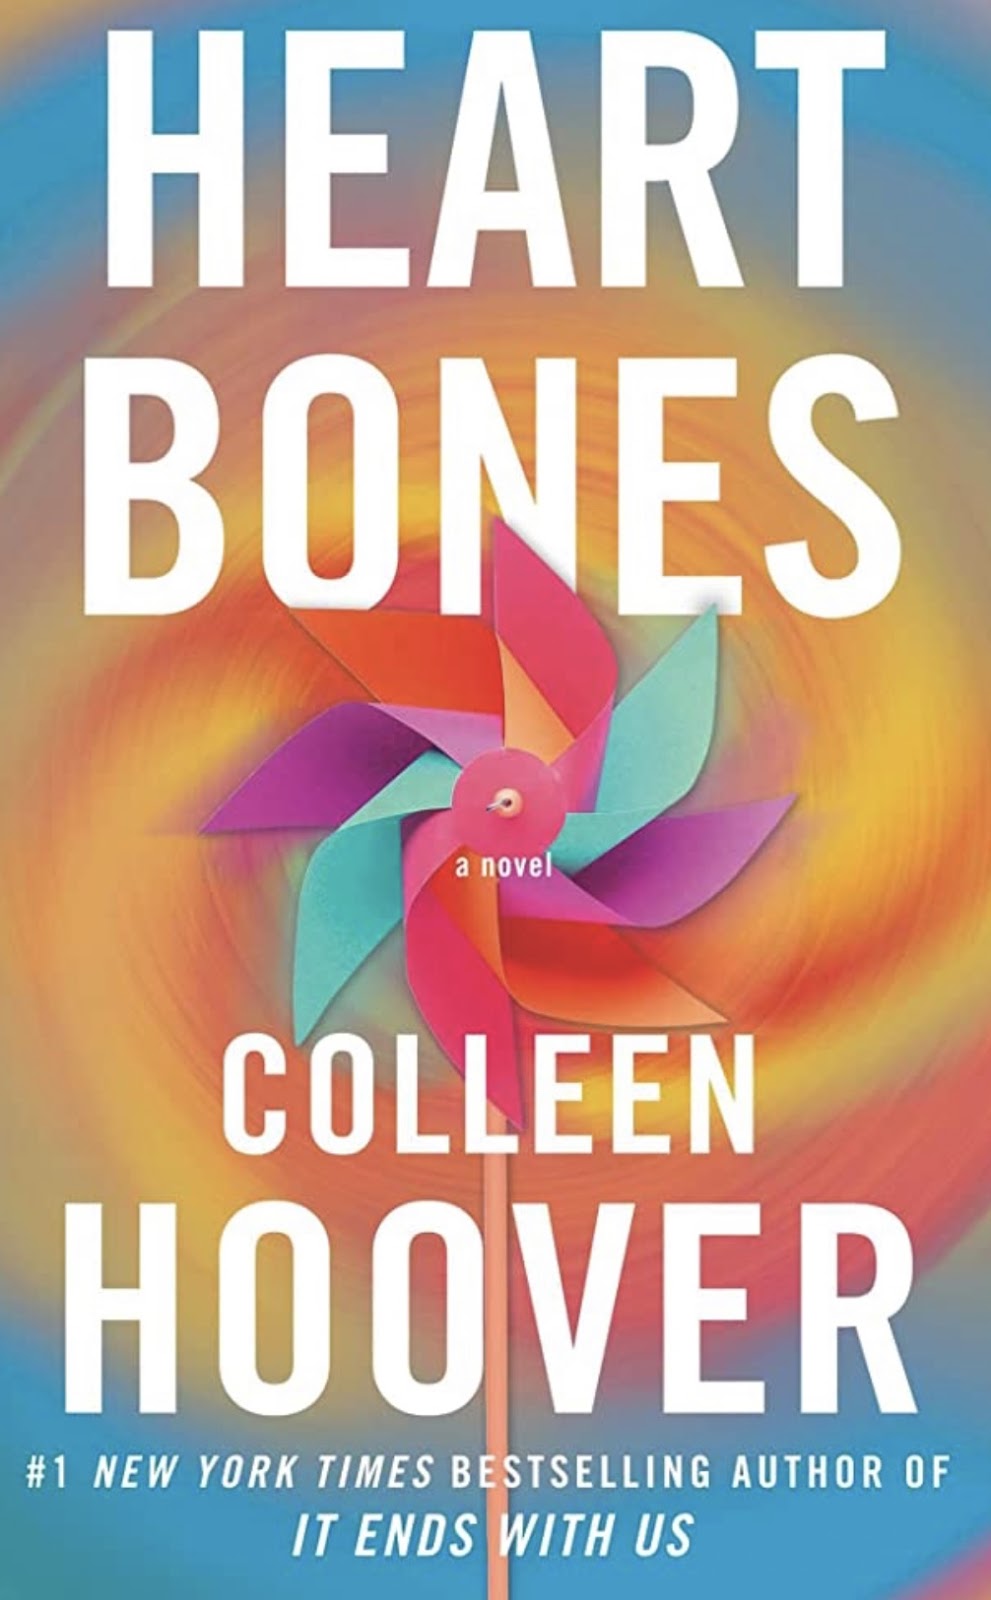 Heart Bones (2020) book.